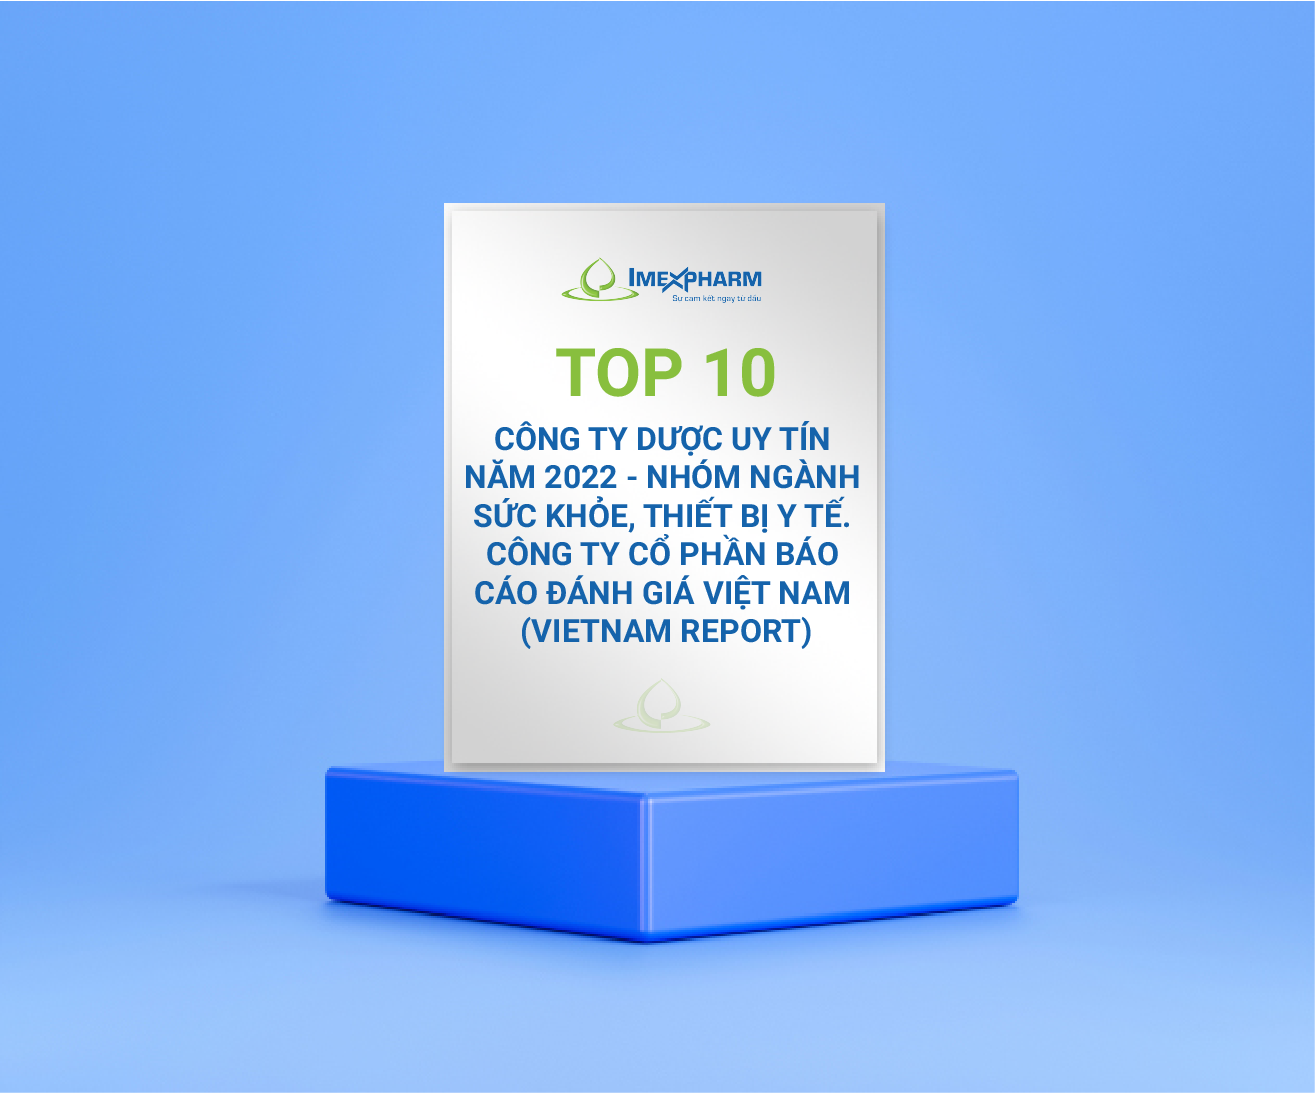 Top 10 Công ty Dược uy tín năm 2022 - nhóm ngành sức khỏe, thiết bị y tế. Công ty cổ phần Báo cáo Đánh giá Việt Nam (Vietnam Report)